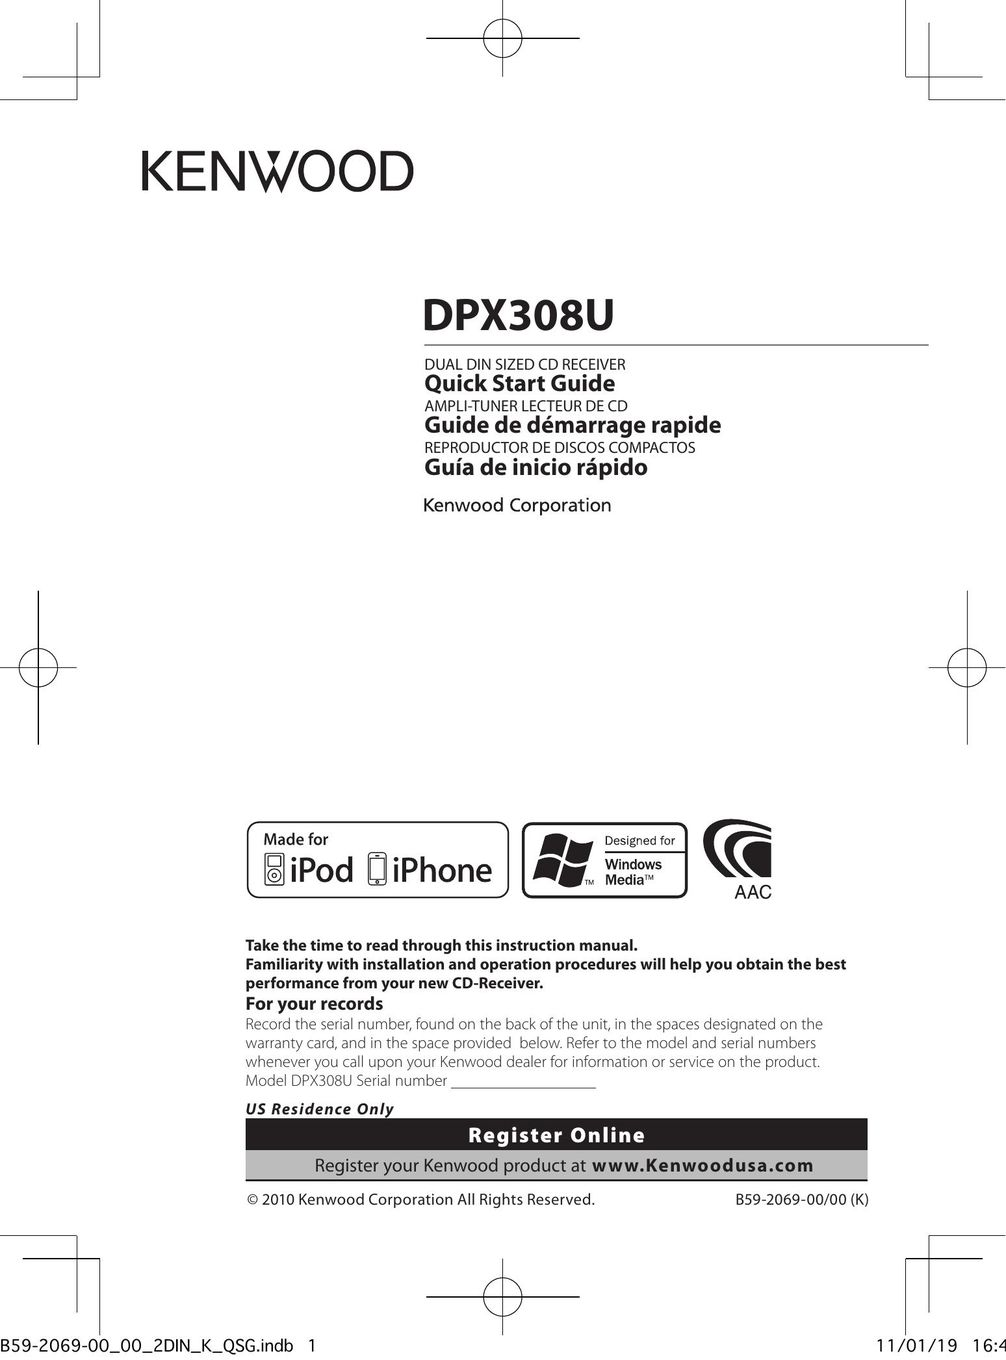 Kenwood DPX308U Car Satellite TV System User Manual